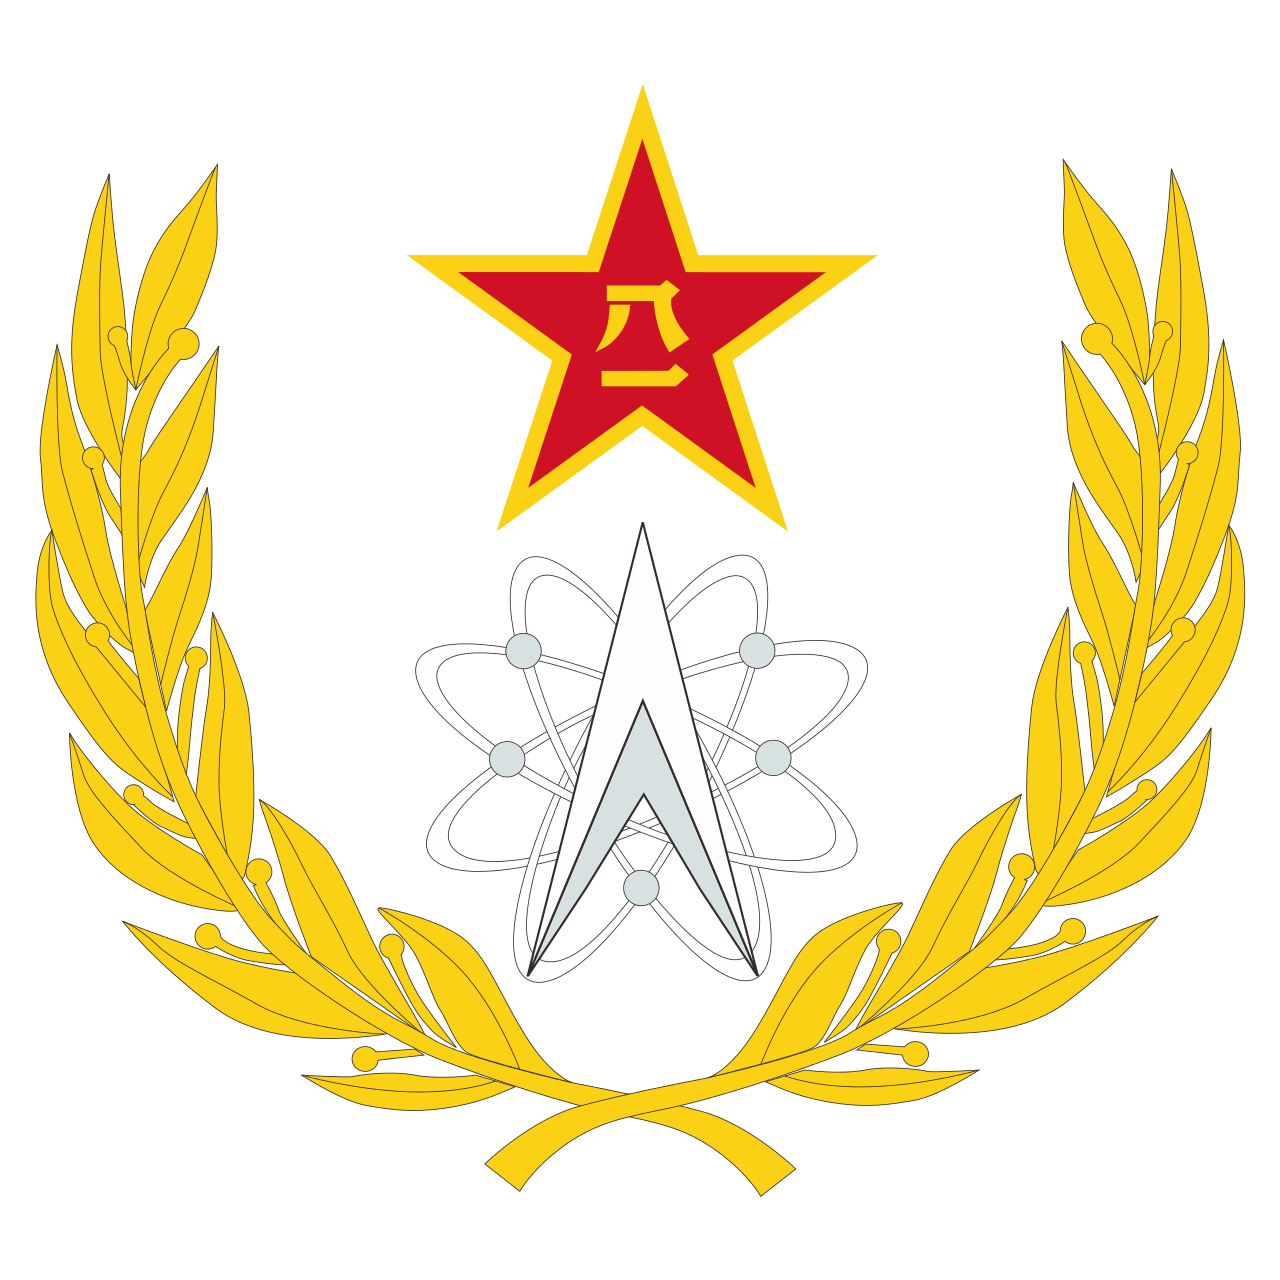 战略支援部队帽徽图片